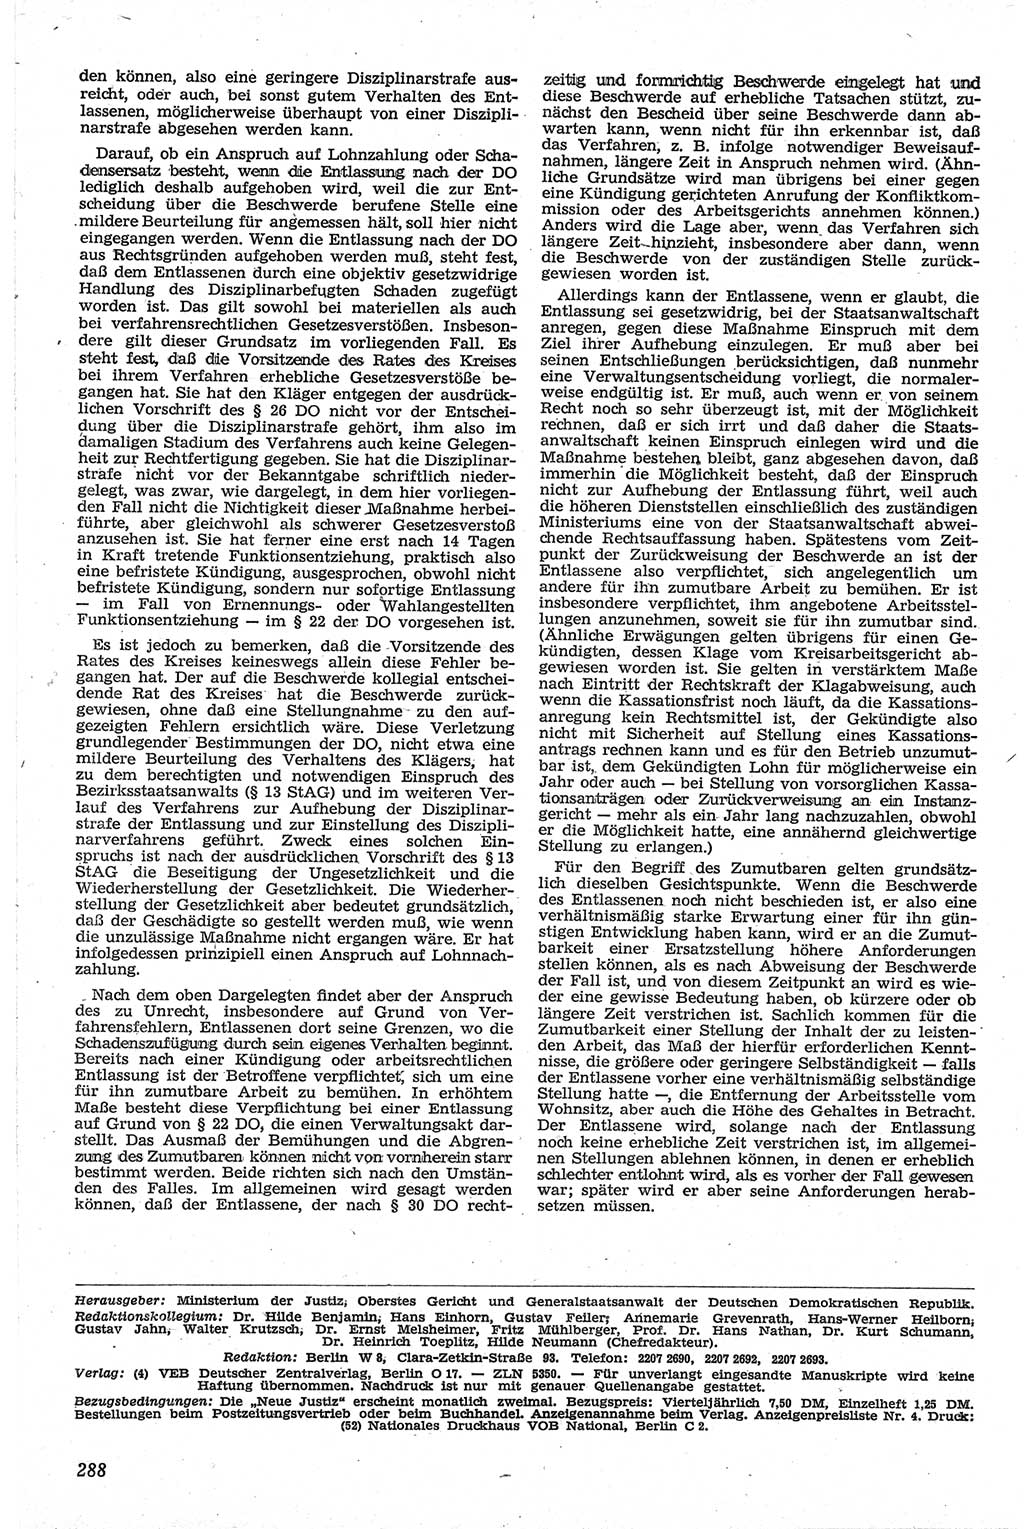 Neue Justiz (NJ), Zeitschrift für Recht und Rechtswissenschaft [Deutsche Demokratische Republik (DDR)], 13. Jahrgang 1959, Seite 288 (NJ DDR 1959, S. 288)